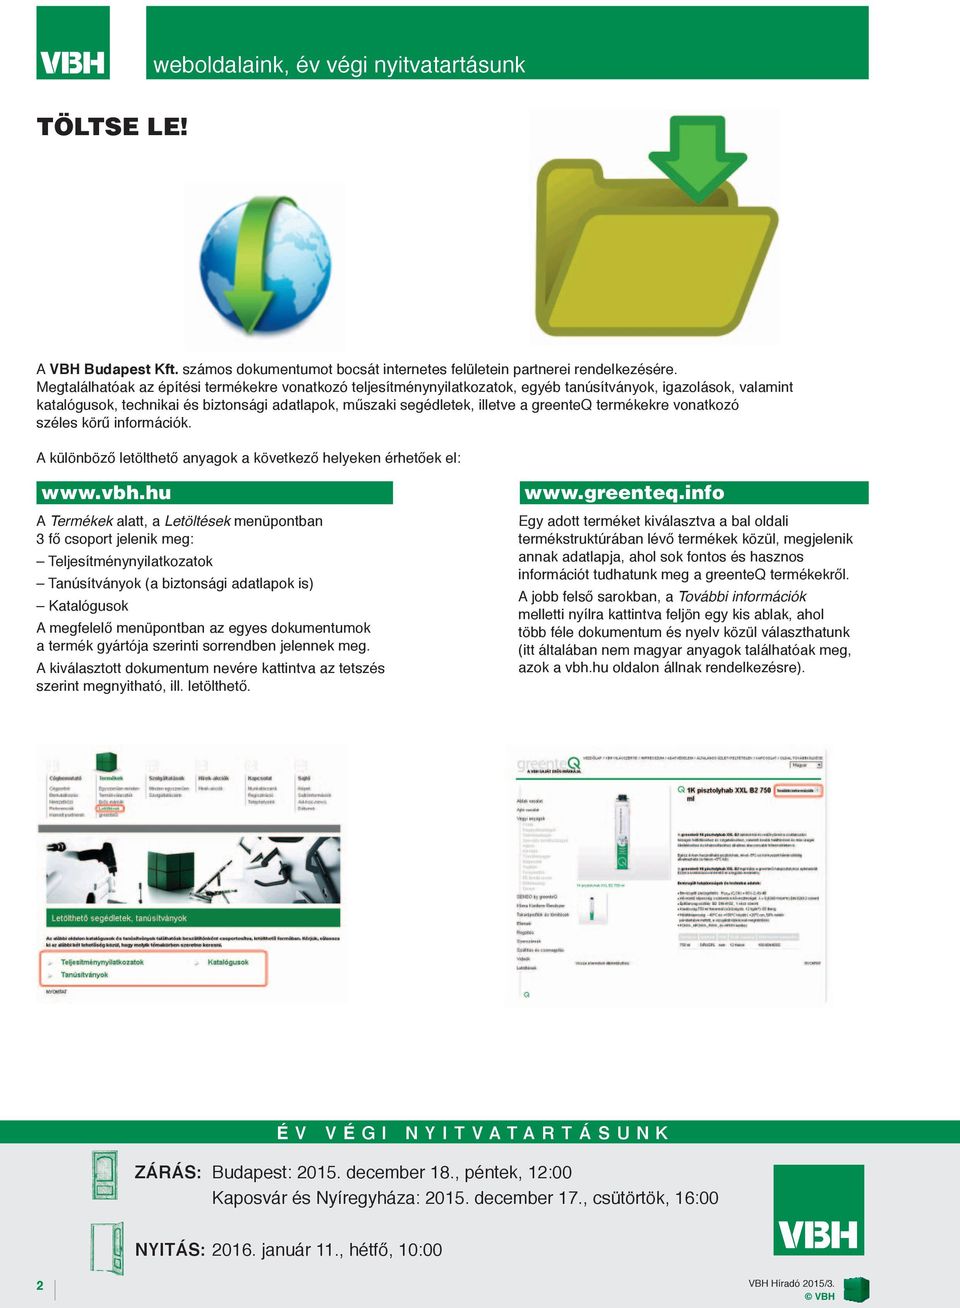 greenteq termékekre vonatkozó széles körű információk. A különböző letölthető anyagok a következő helyeken érhetőek el: www.vbh.